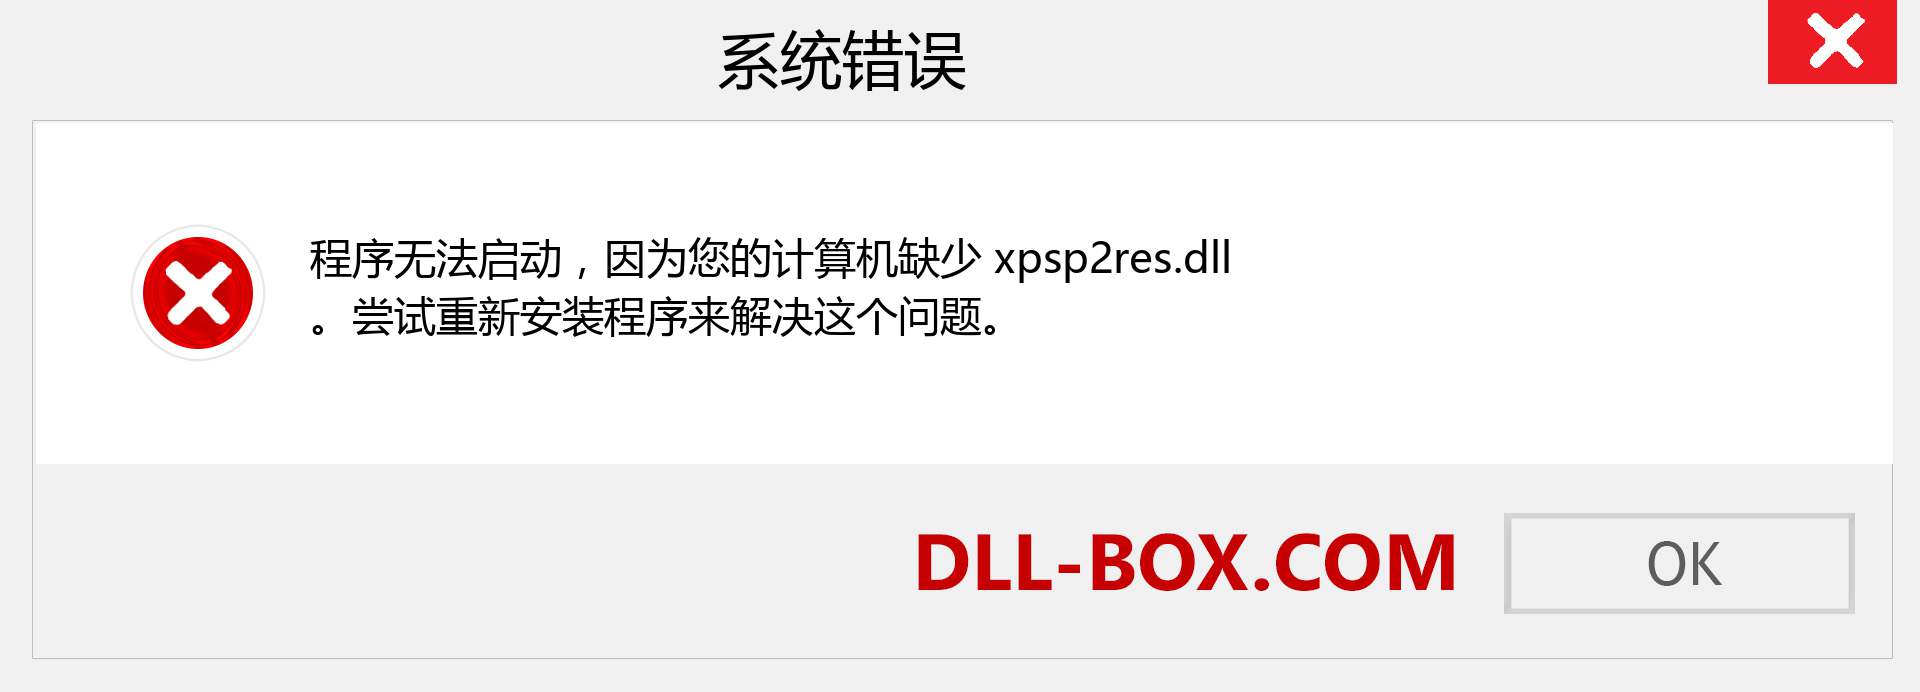 xpsp2res.dll 文件丢失？。 适用于 Windows 7、8、10 的下载 - 修复 Windows、照片、图像上的 xpsp2res dll 丢失错误